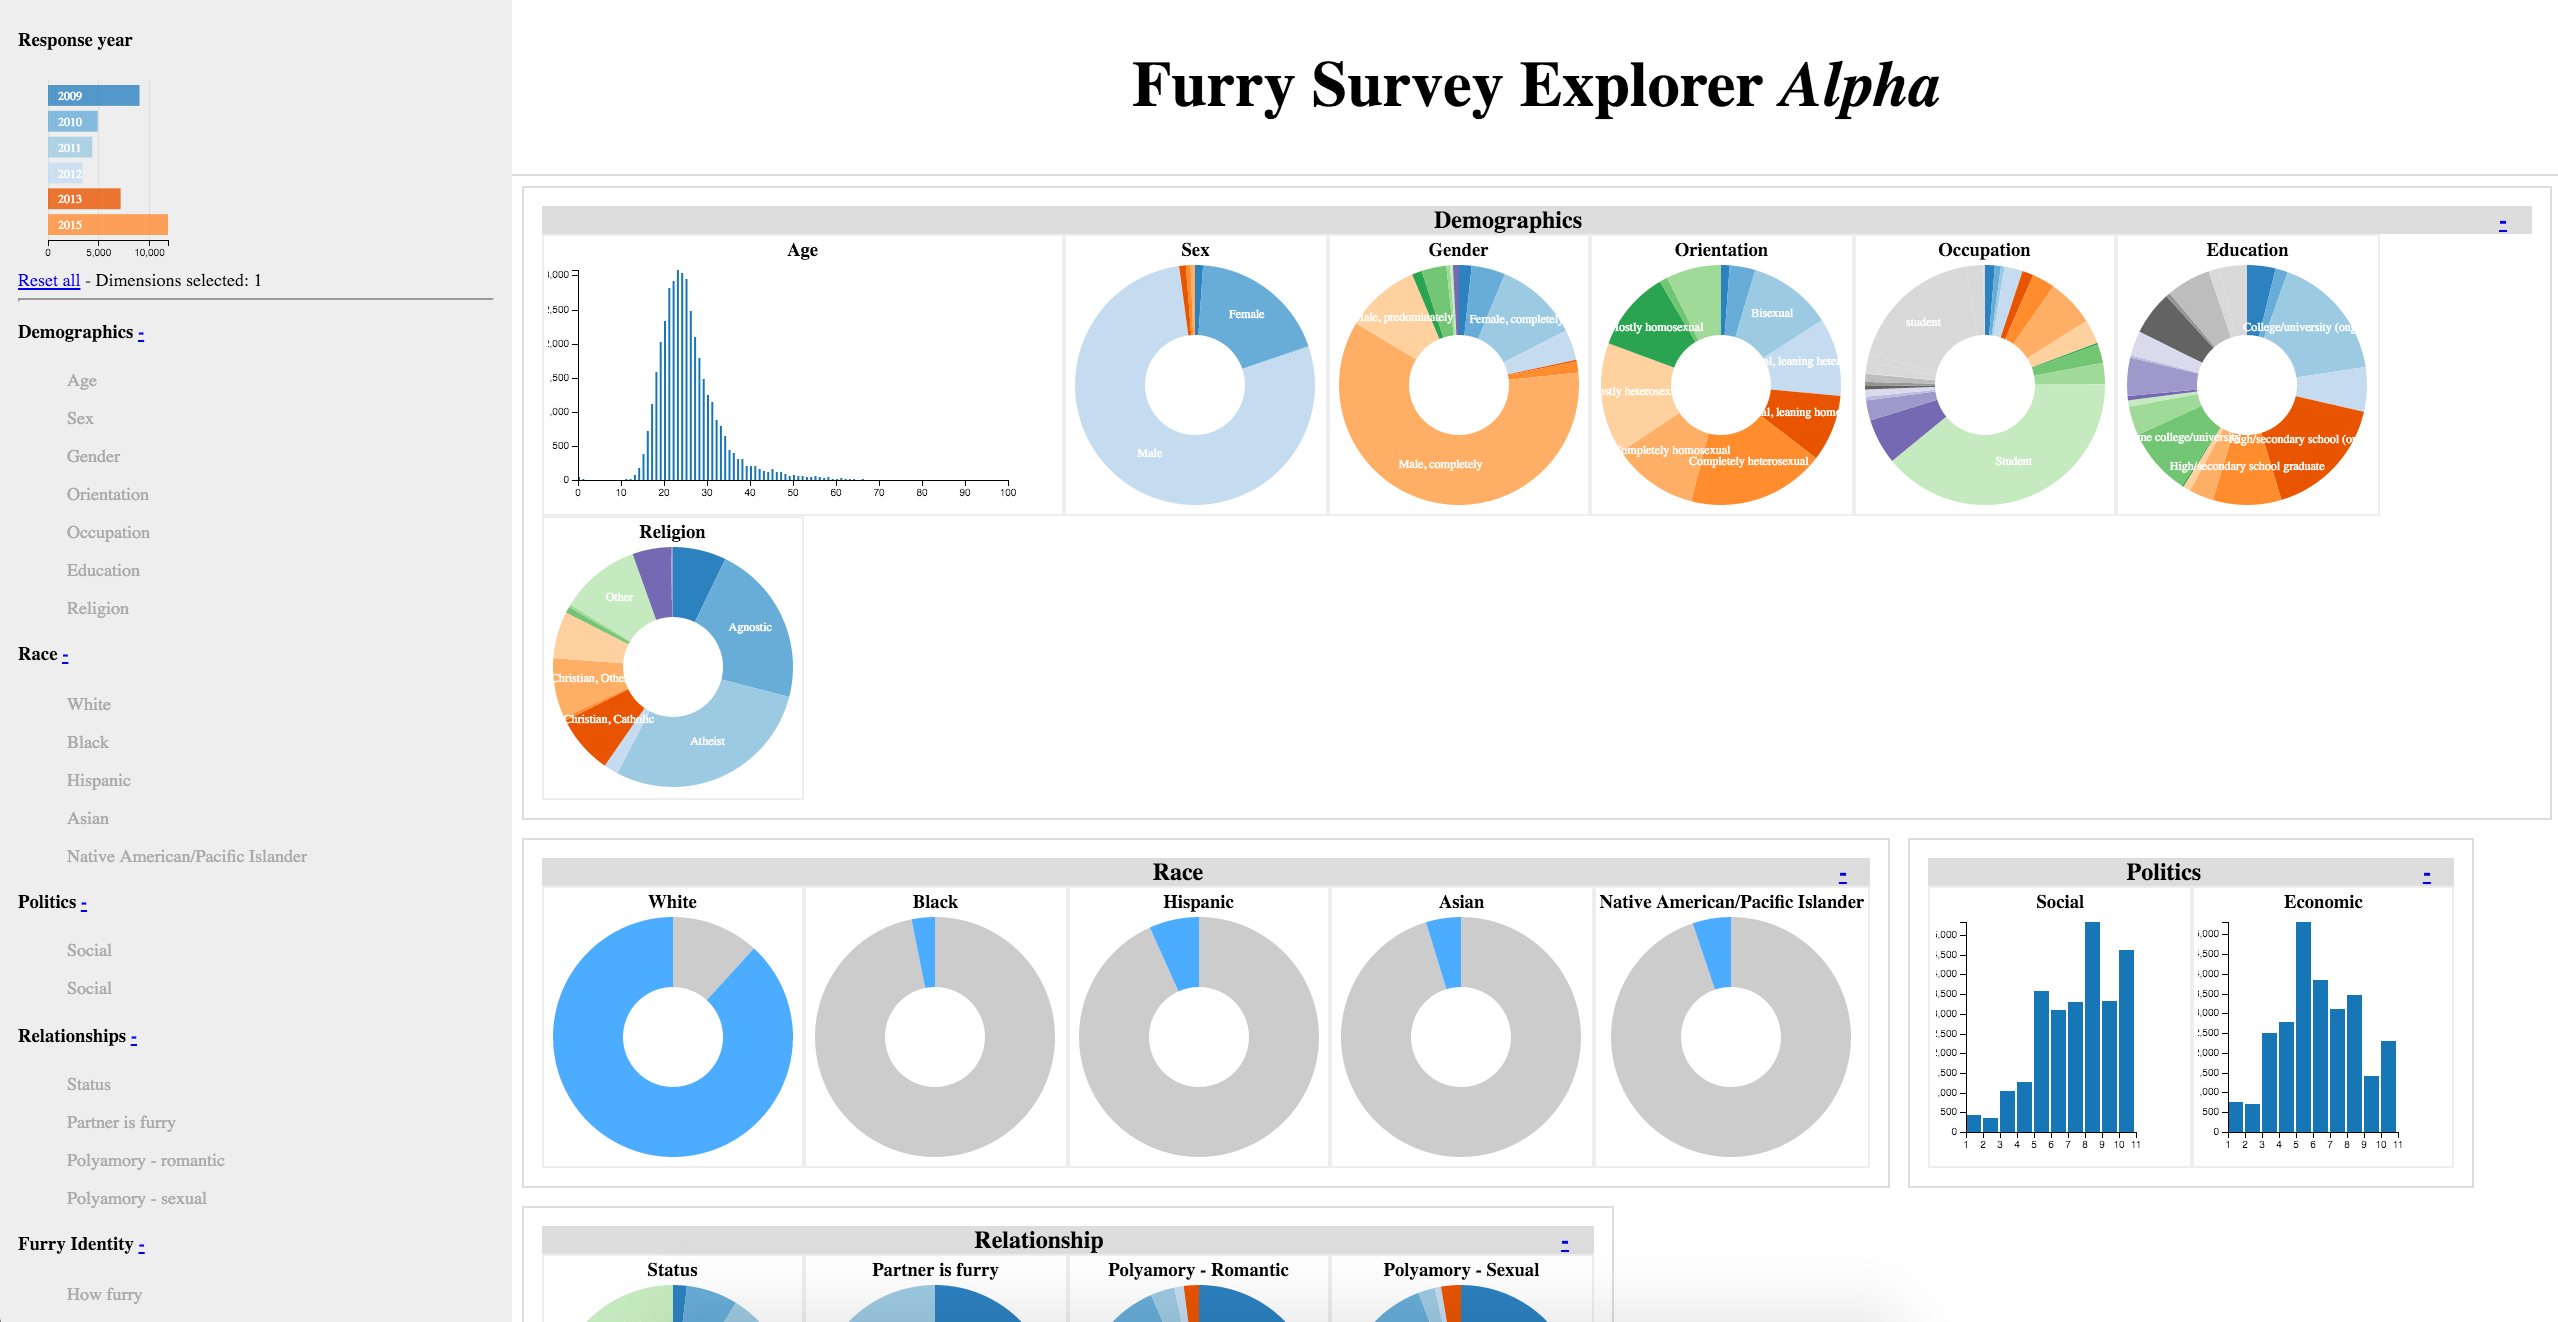 The Furry Survey Explorer